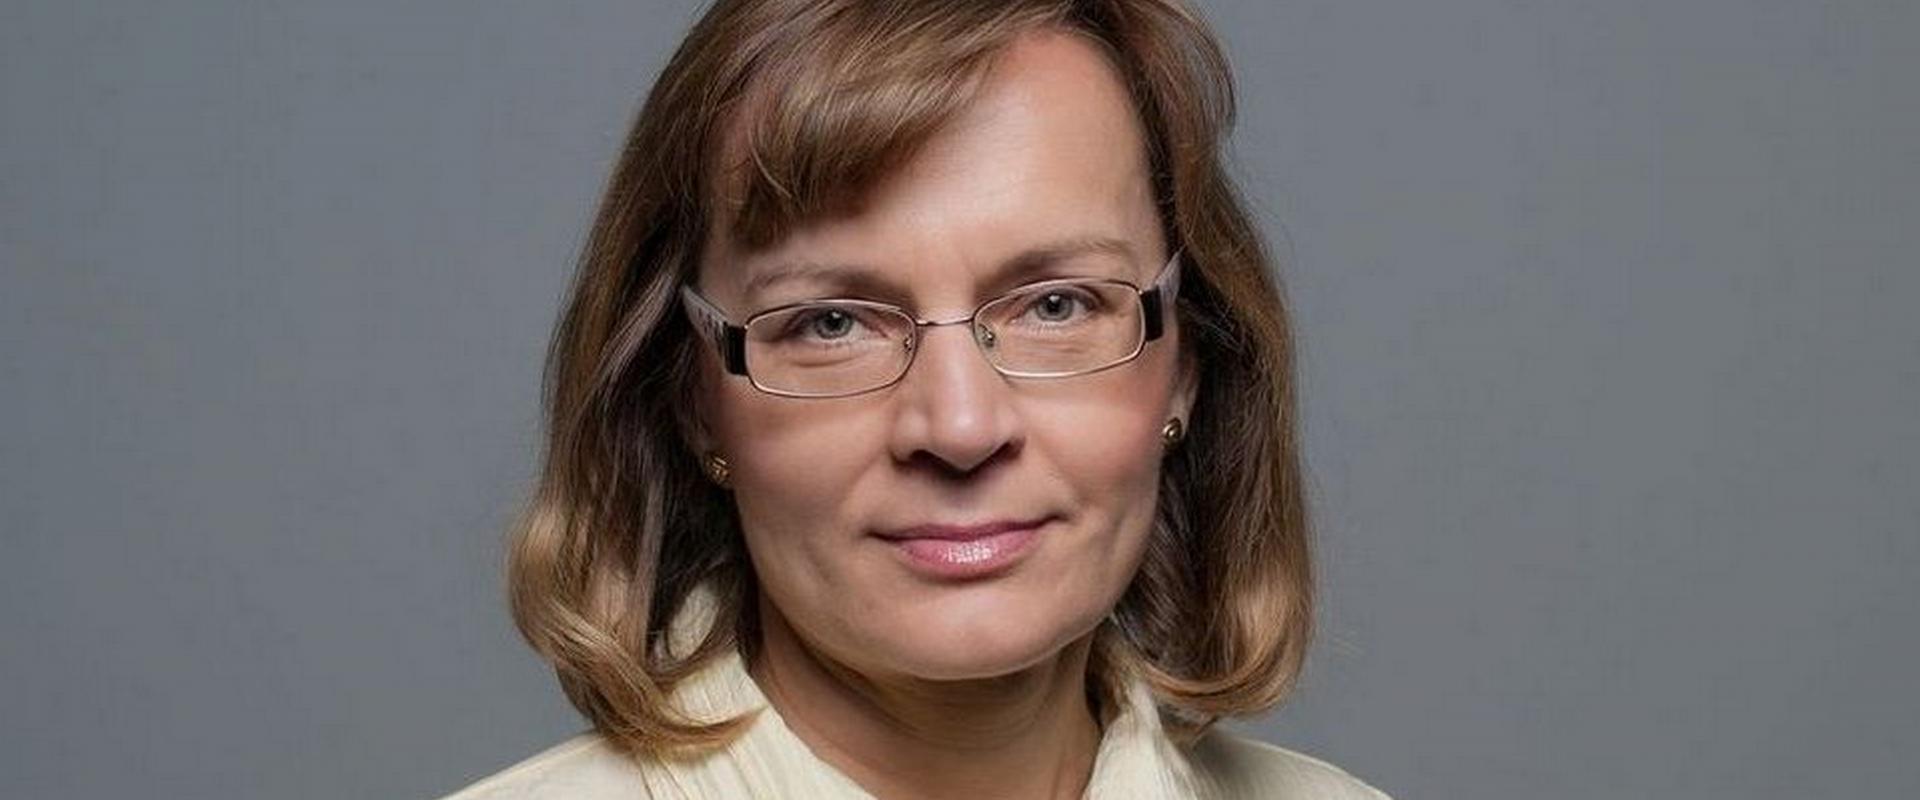 LCA 2022 oczami jurorów - Anita Błaszczak o kosmetycznym FOMO, któremu można ulec przy tak bogatej ofercie produktów